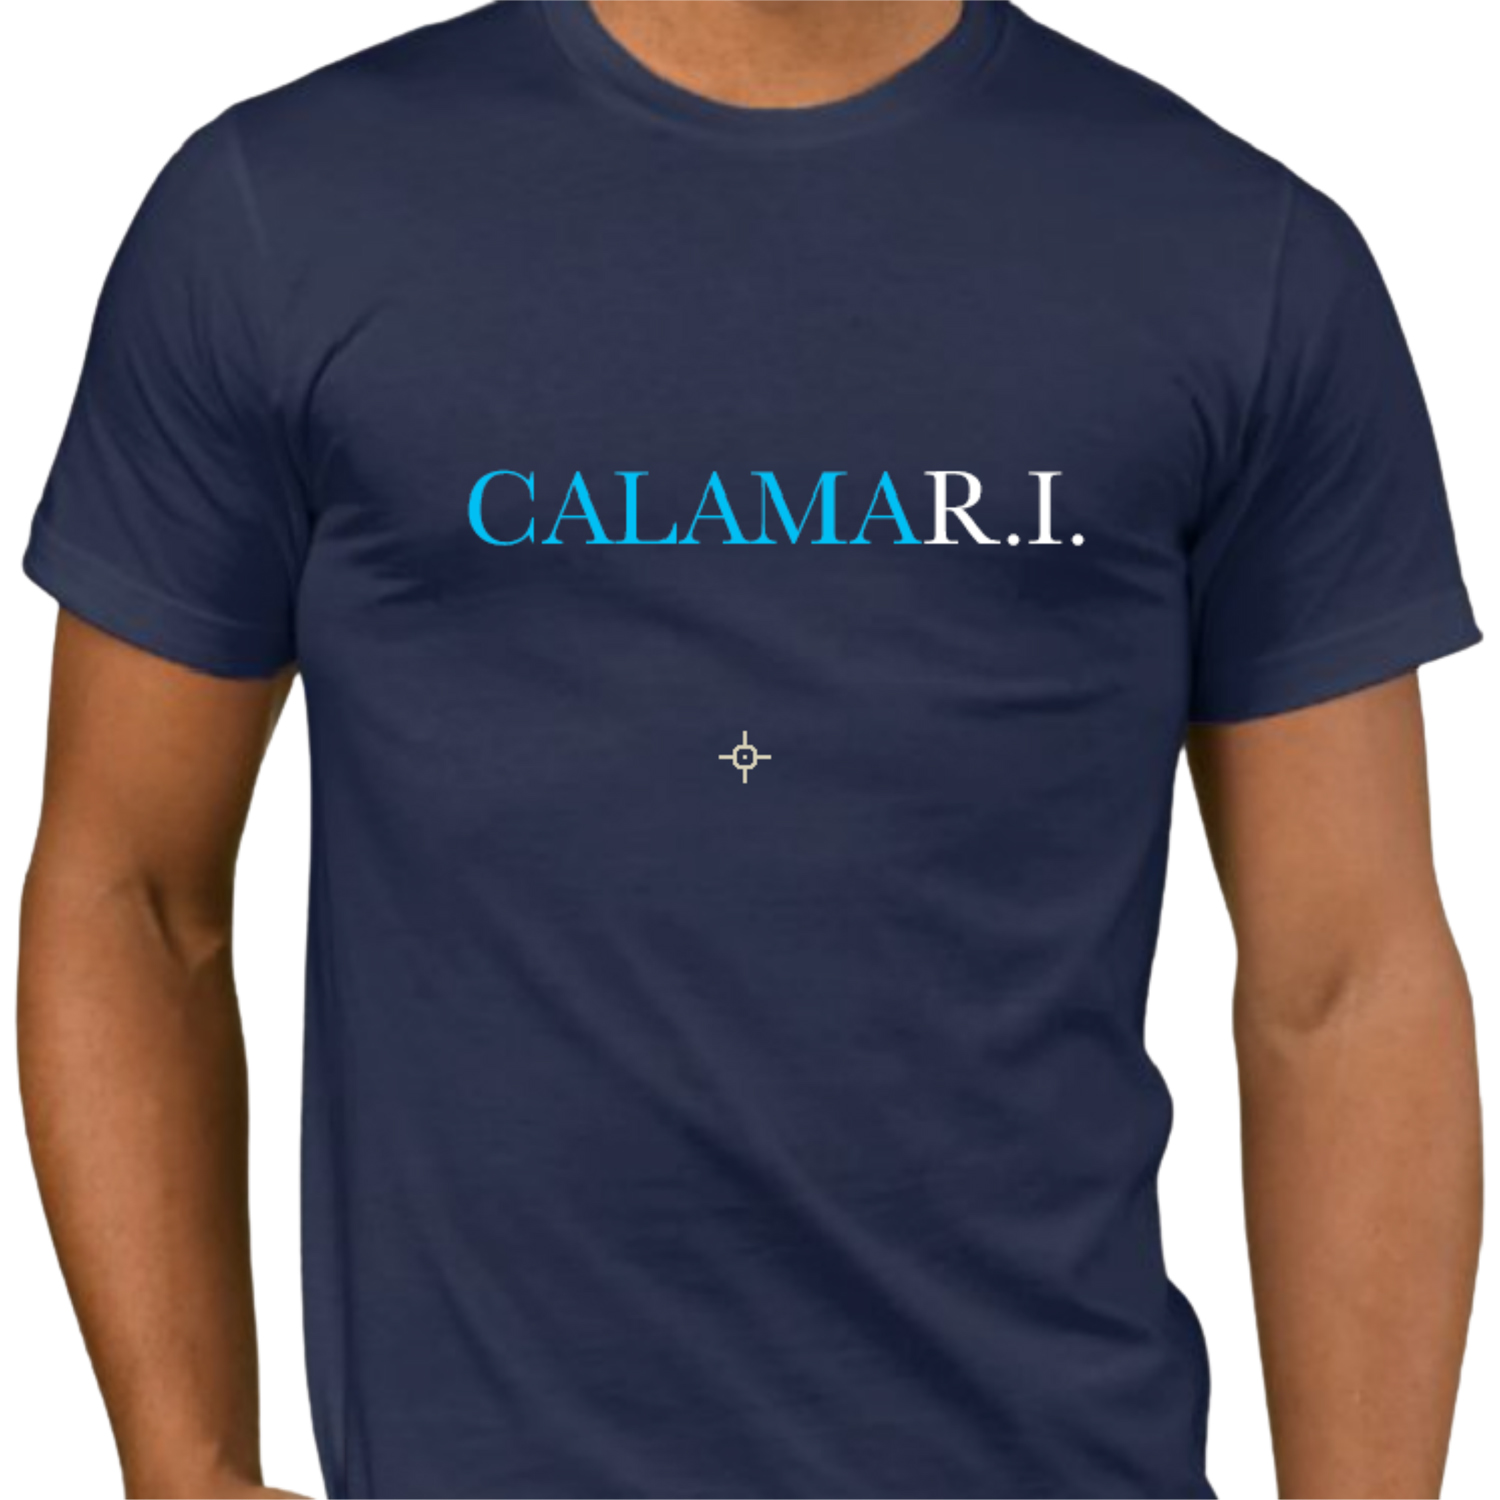 Beau Tyler Bow Ties - CALAMAR.I. Rhode Island calamari shirt 1 blue front